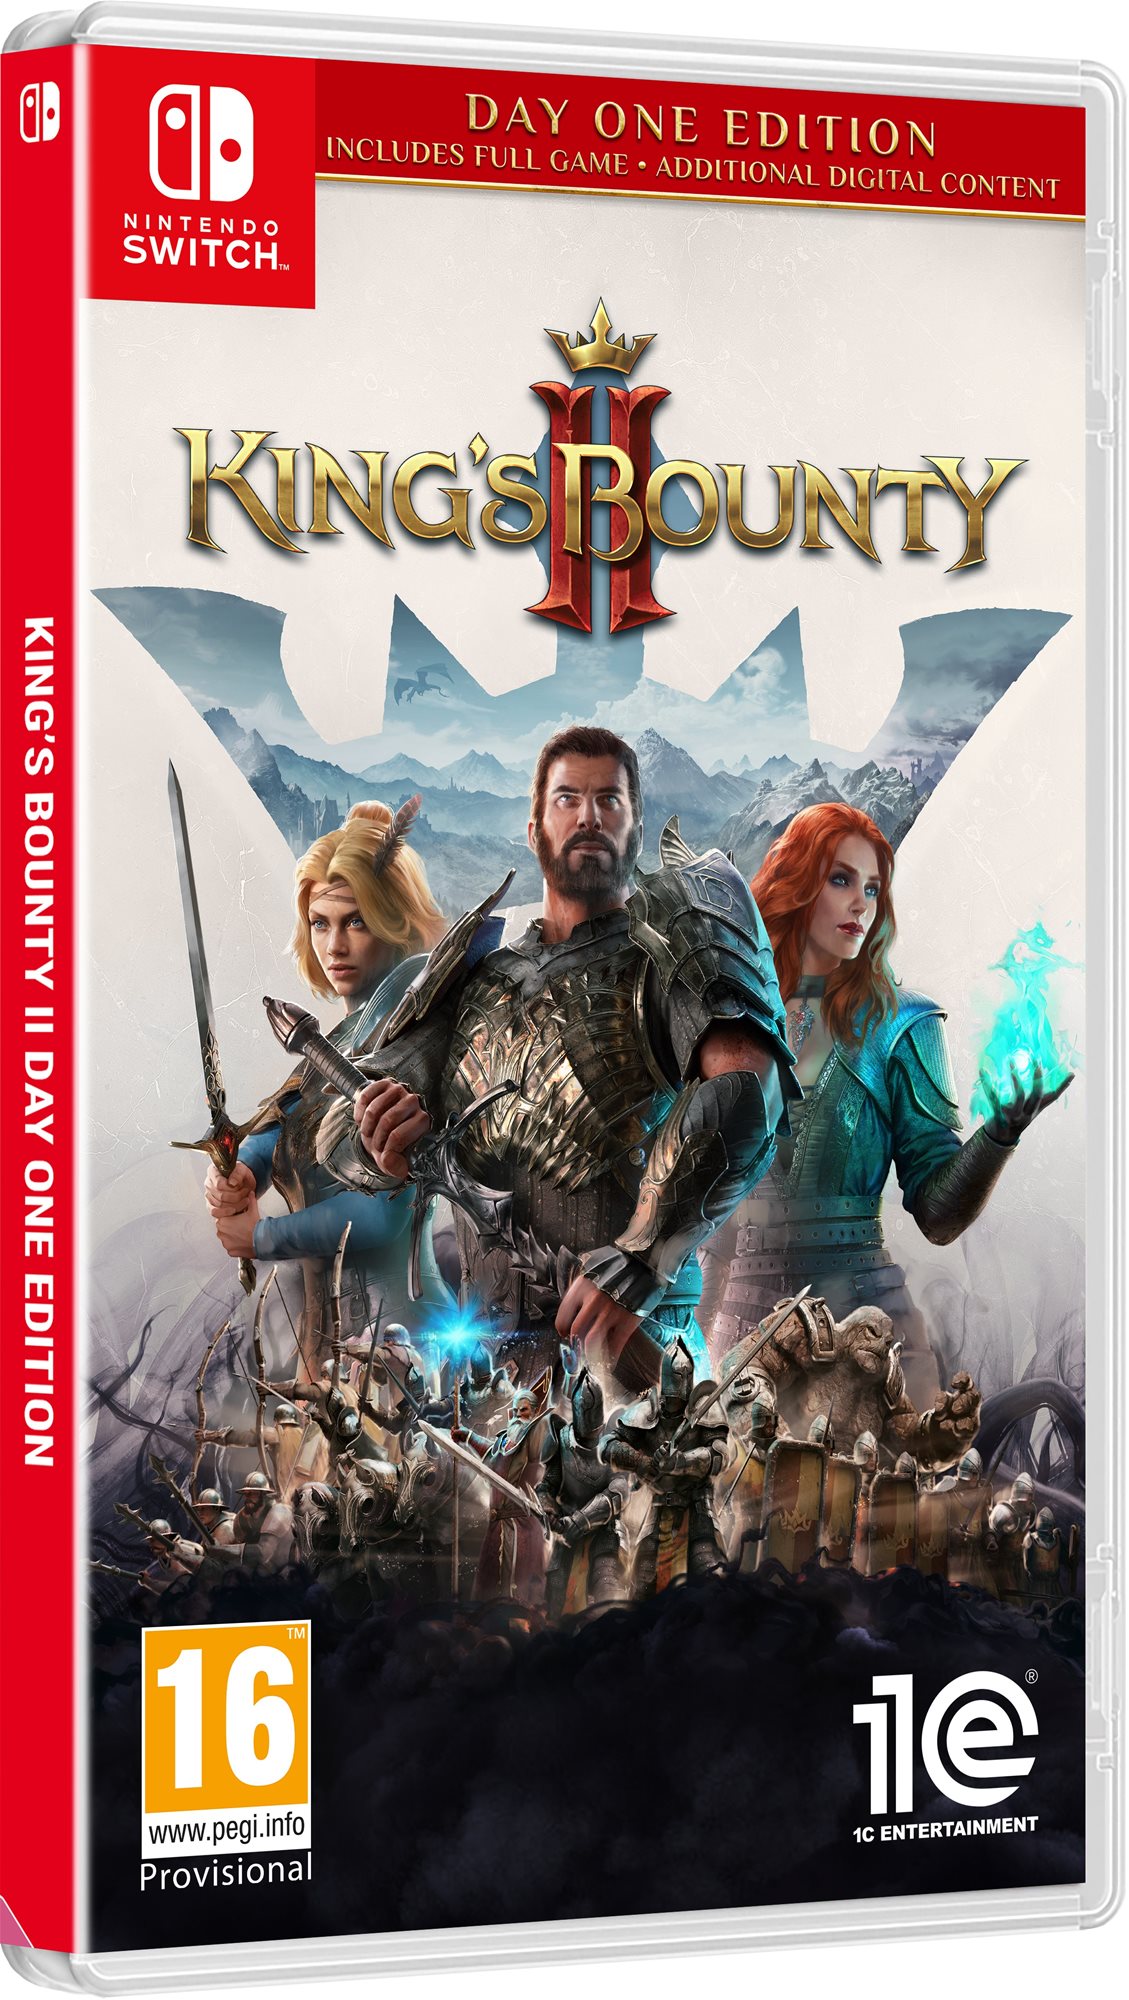 Kings Bounty 2 - Nintendo Switch